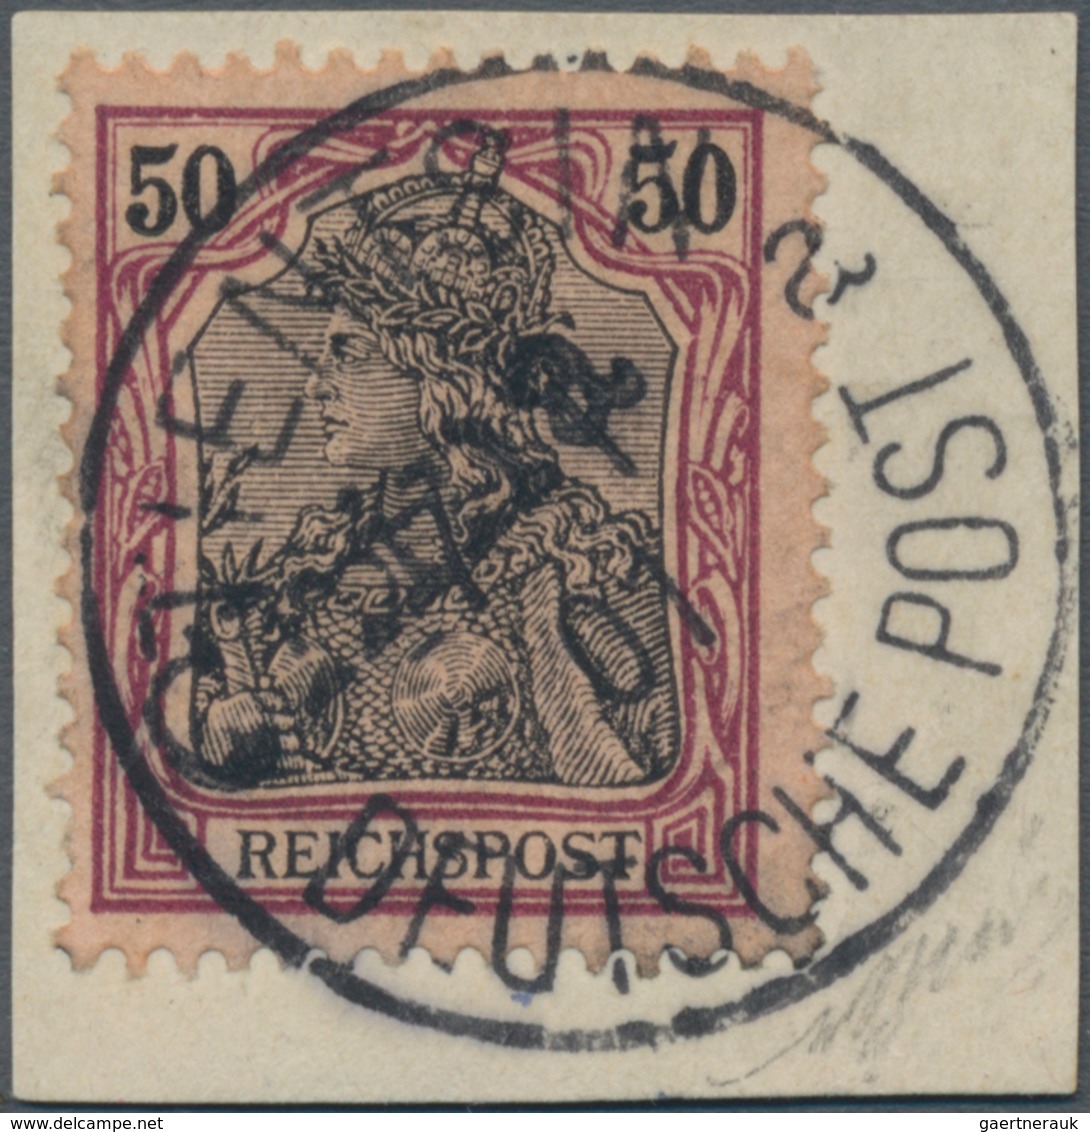 Deutsche Post In China: 1900, 50 Pfg., Handstempel, Sehr Gut Zentriertes Exemplar - China (kantoren)